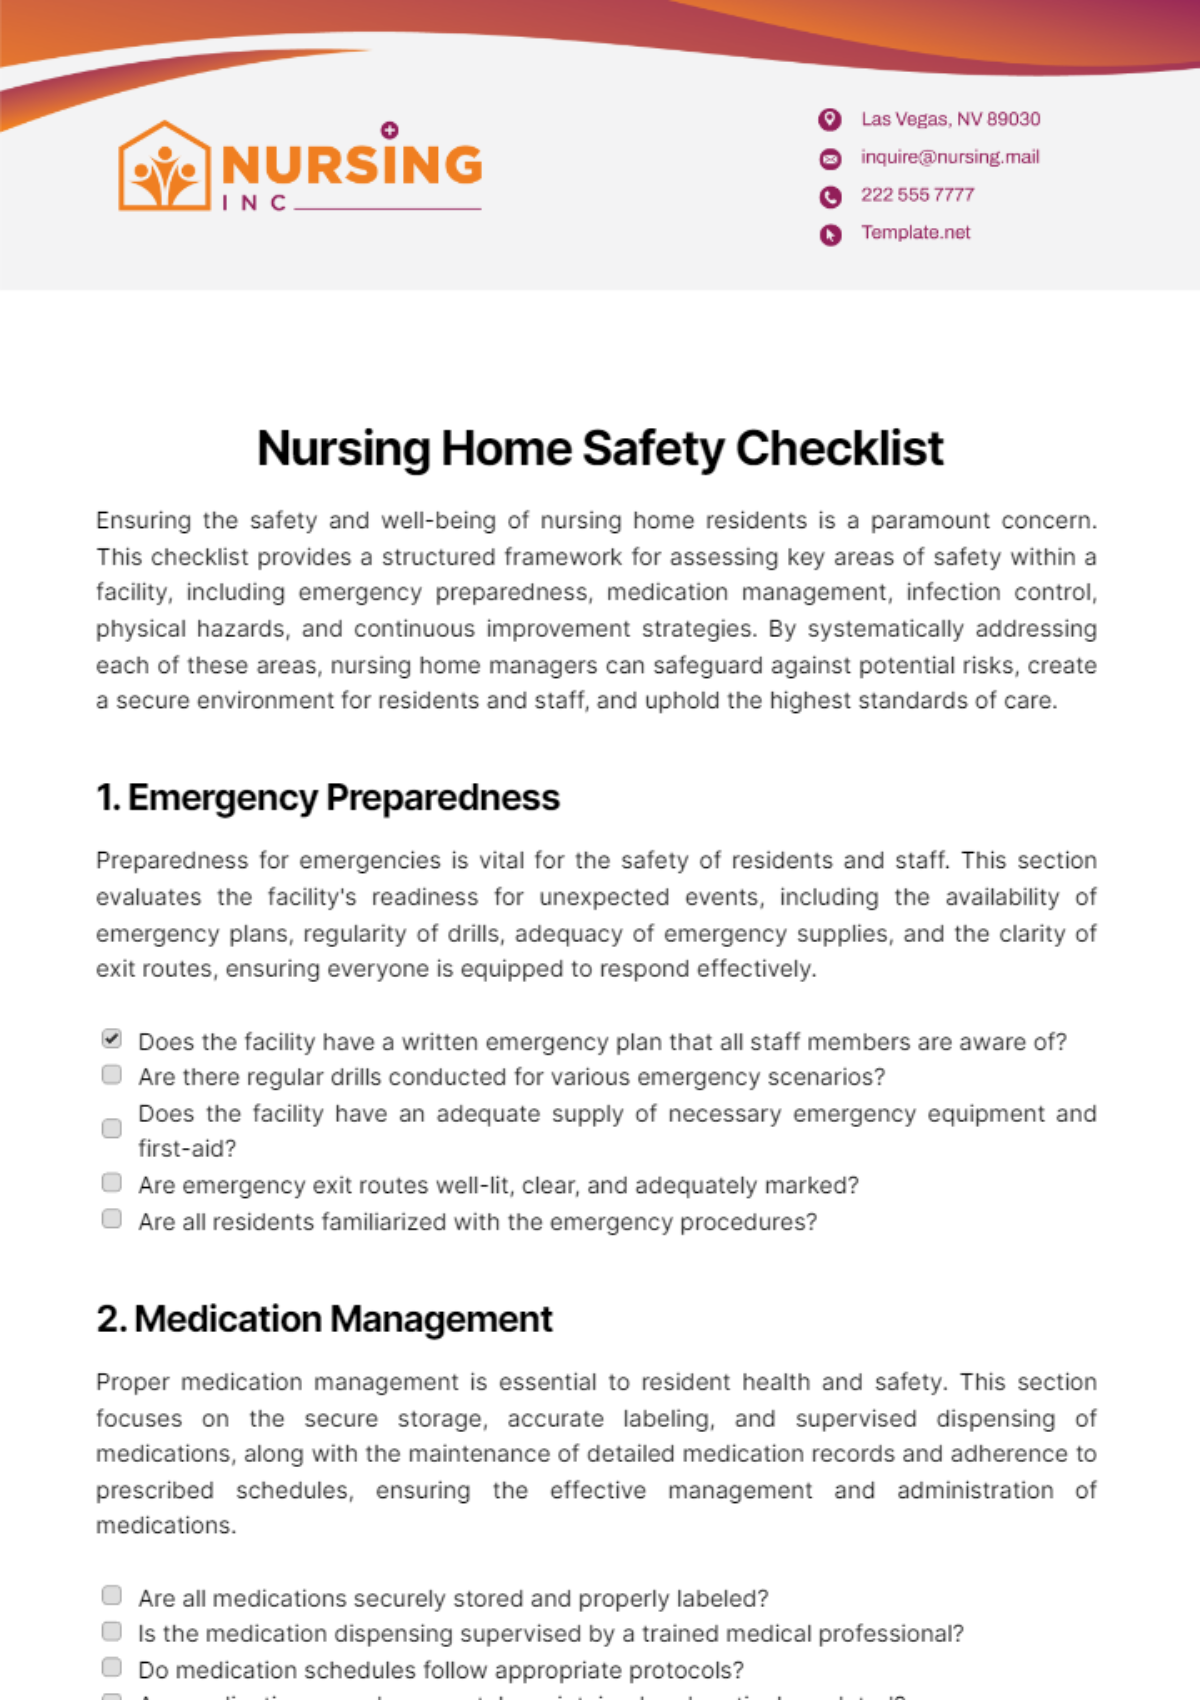 Nursing Home Safety Checklist Template